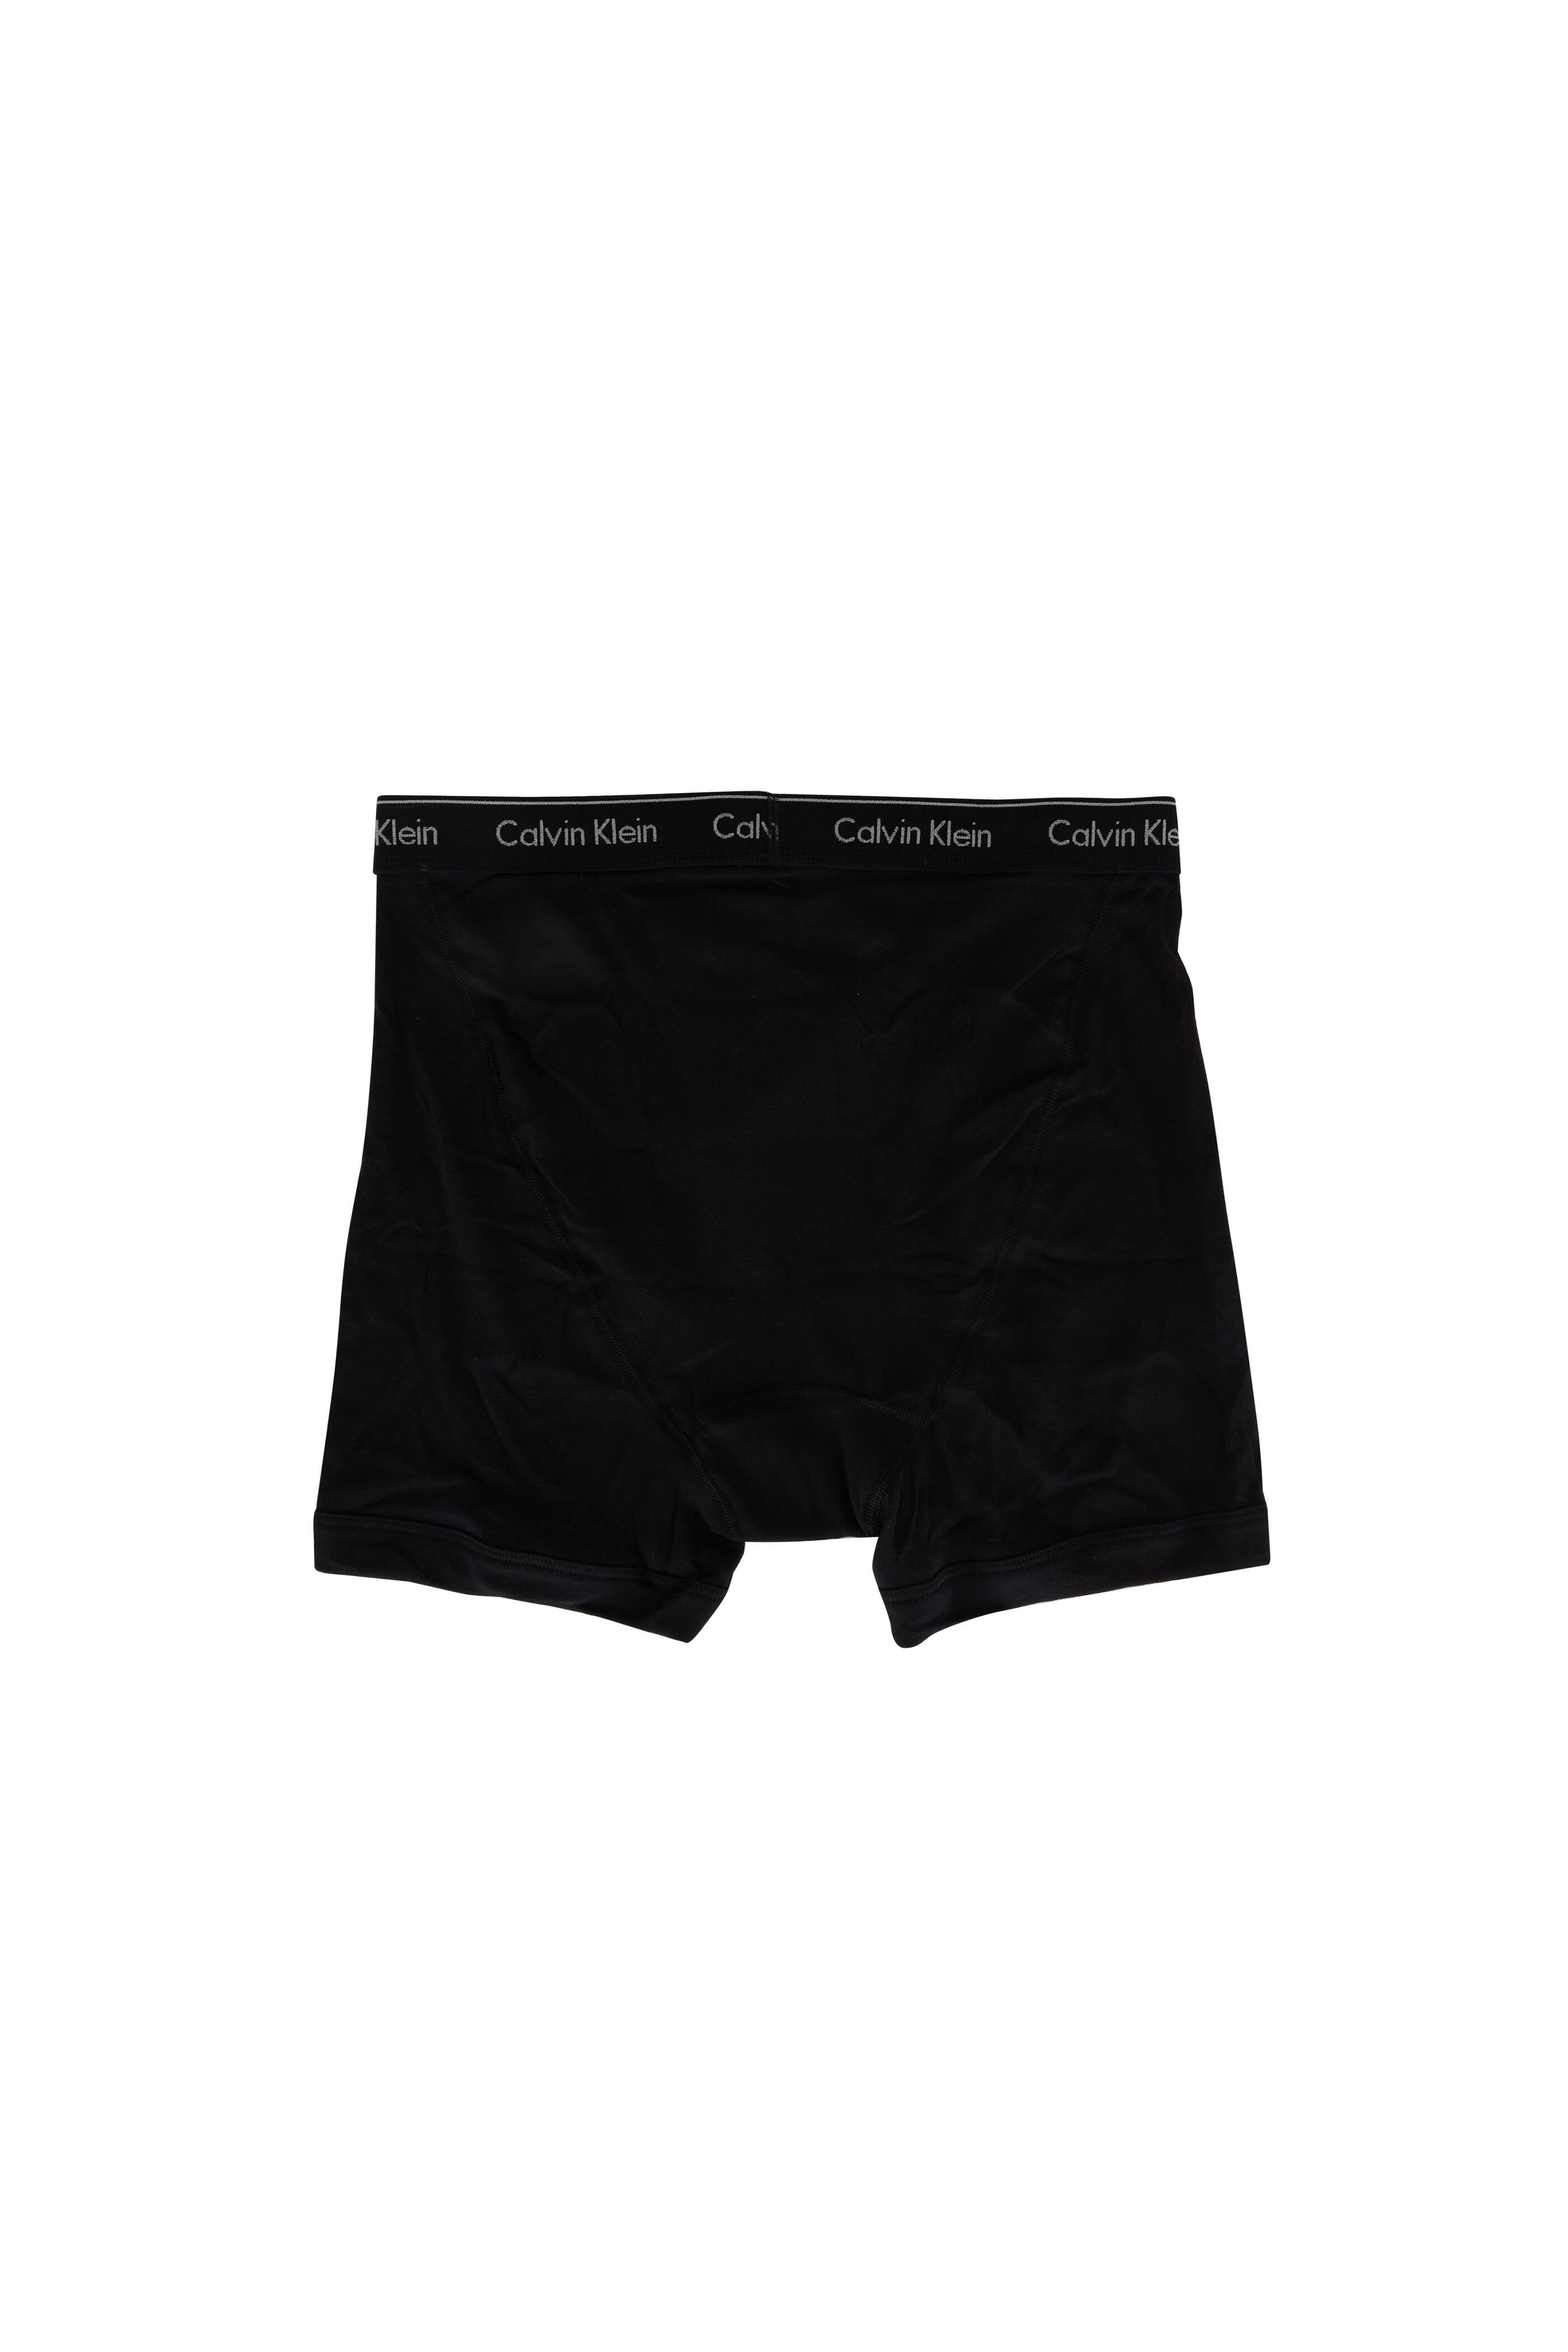 Calvin Klein underwear – The best underwears with free shipping